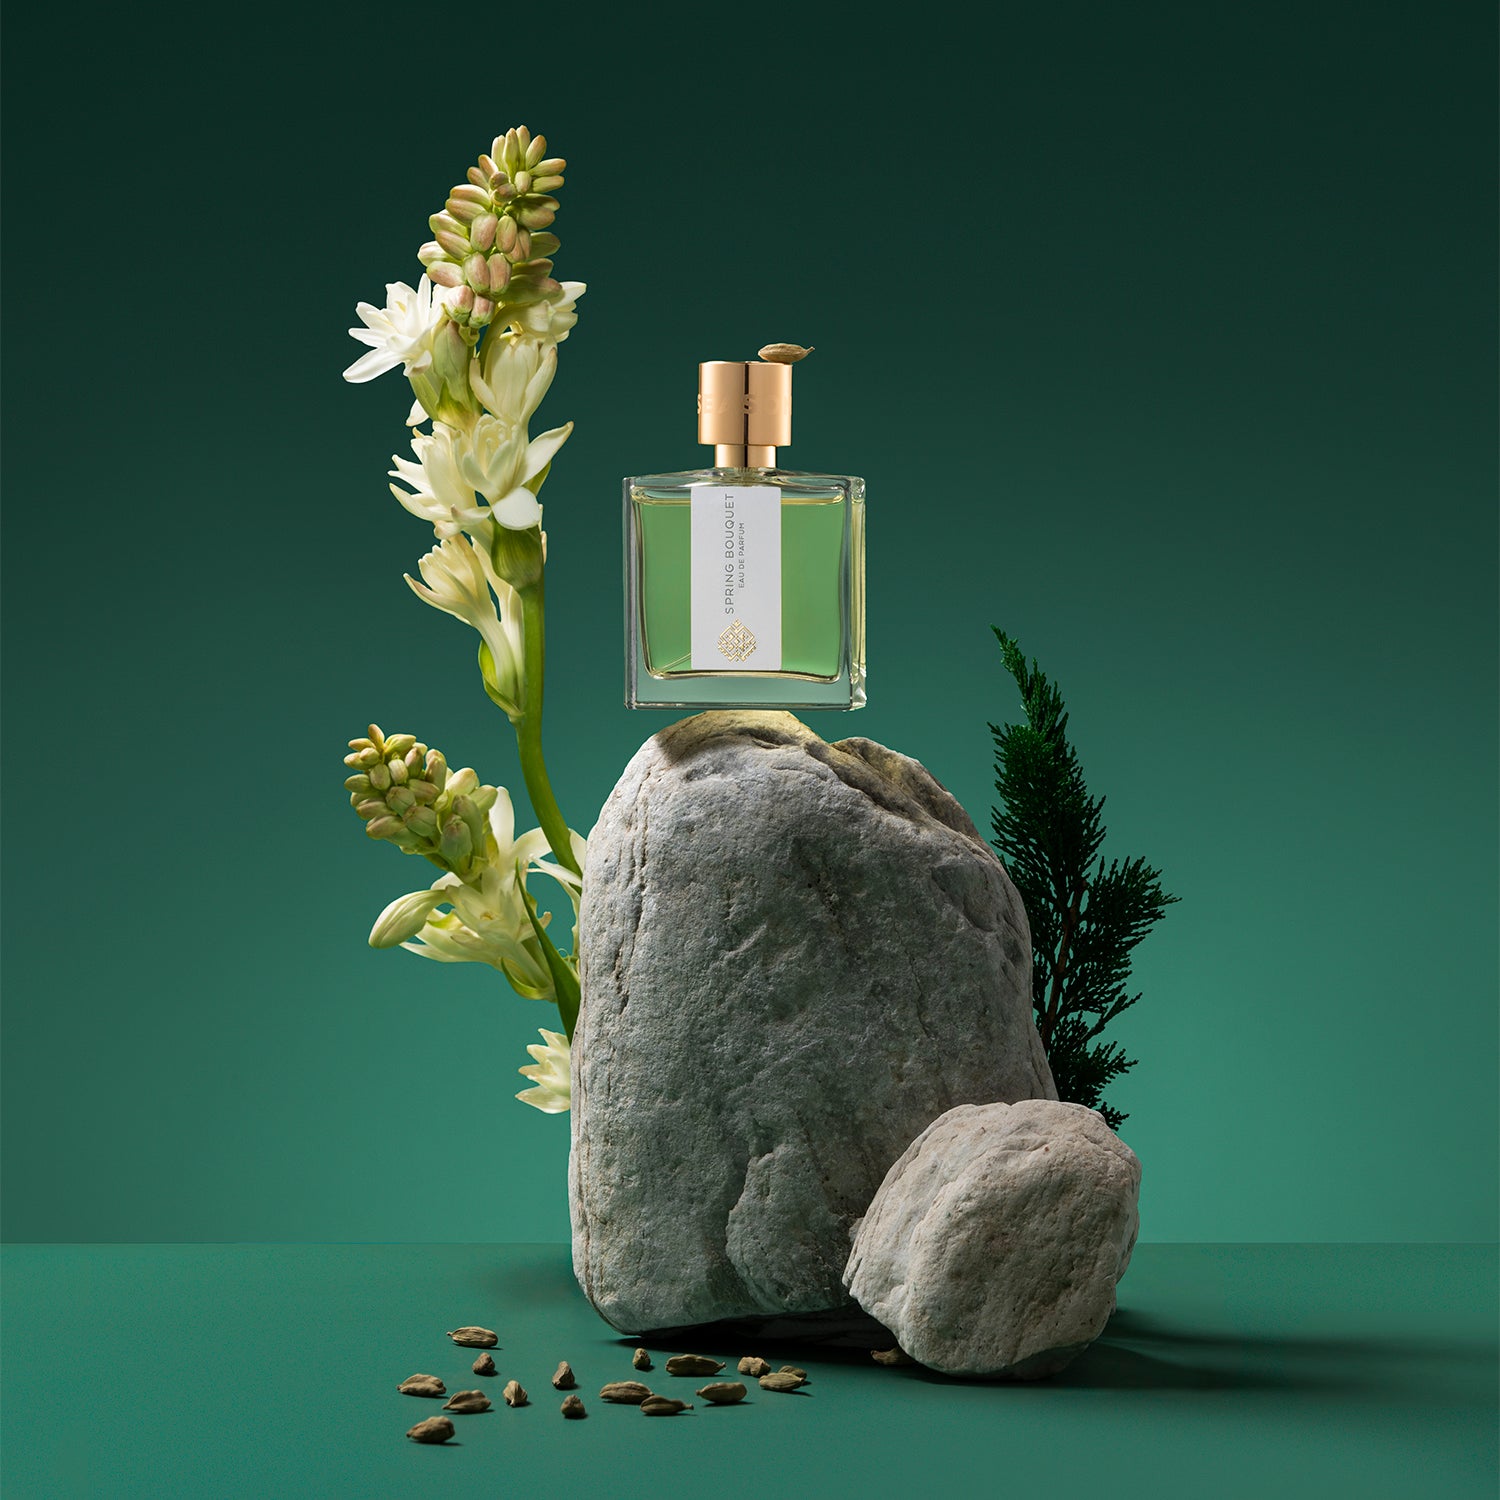 Spring Bouquet Eau De Parfum 50ml - A Niche Unisex Perfume for Men and Women